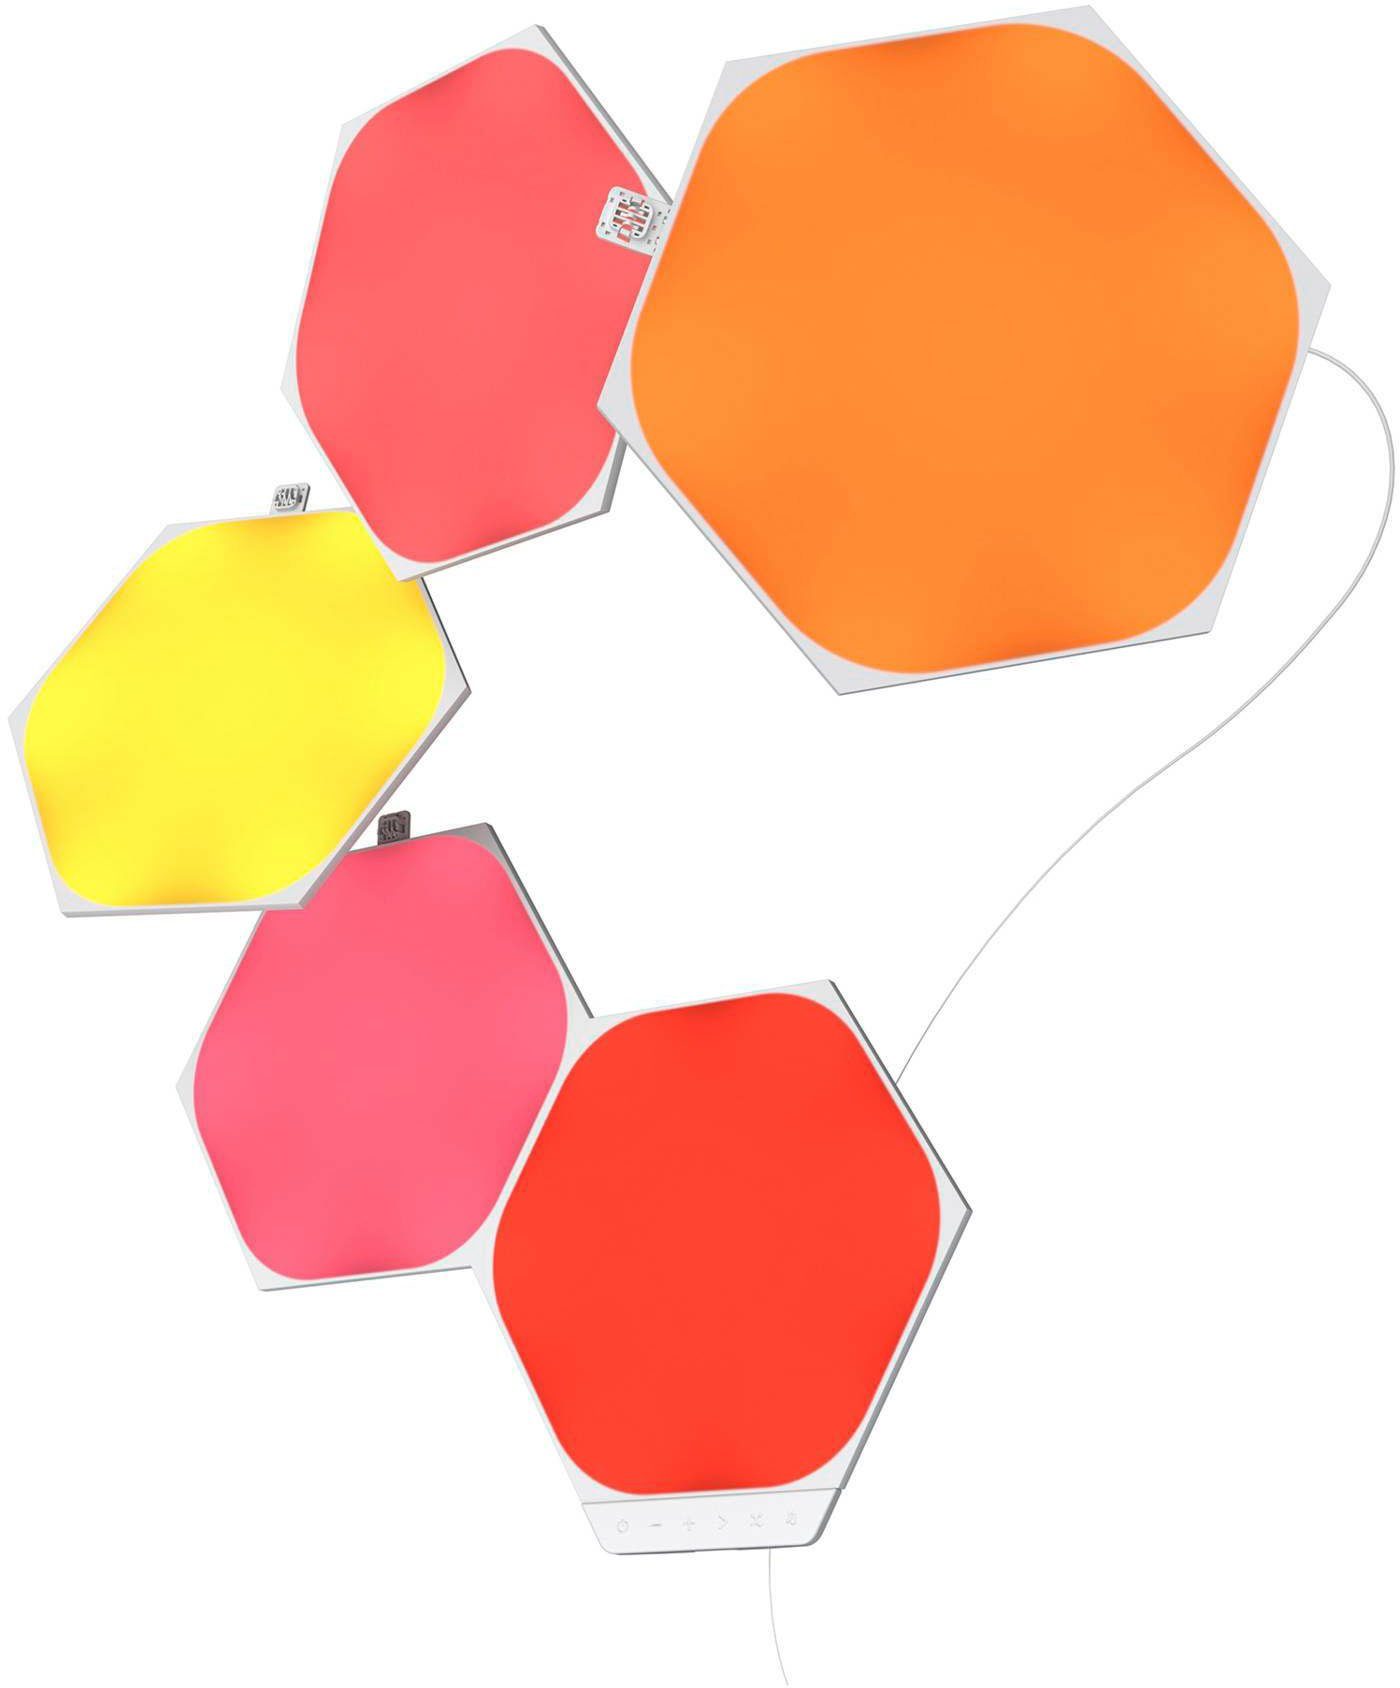 Hexagons, Dimmfunktion, Panel nanoleaf fest Farbwechsler LED integriert, LED